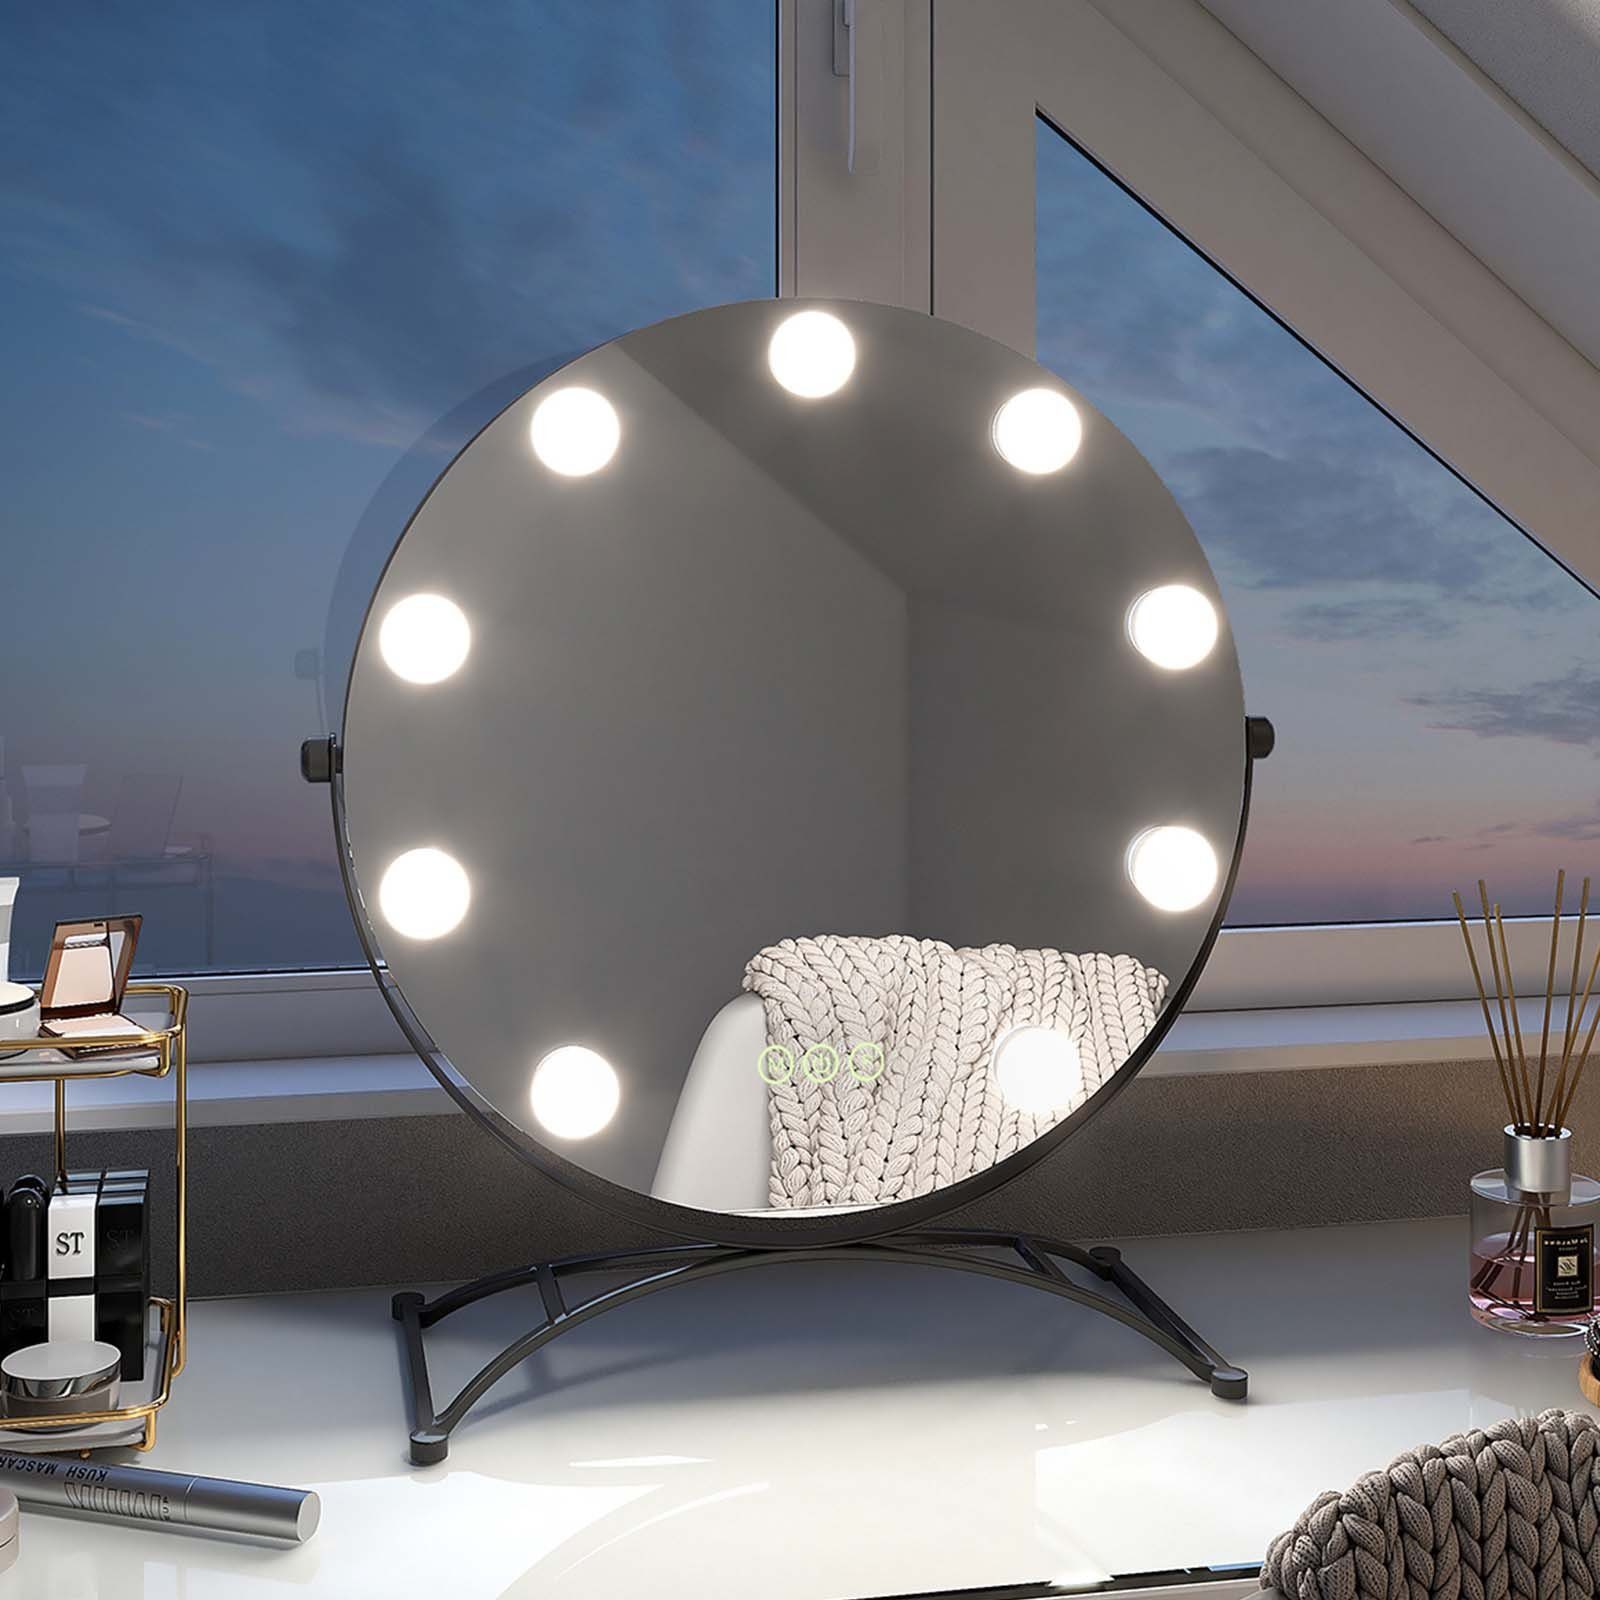 EMKE Kosmetikspiegel Runder Schminkspiegel Hollywood Spiegel mit Beleuchtung Tischspiegel, 3 Lichtfarben,Dimmbar,7 x Vergrößerungsspiegel,360° Drehbar